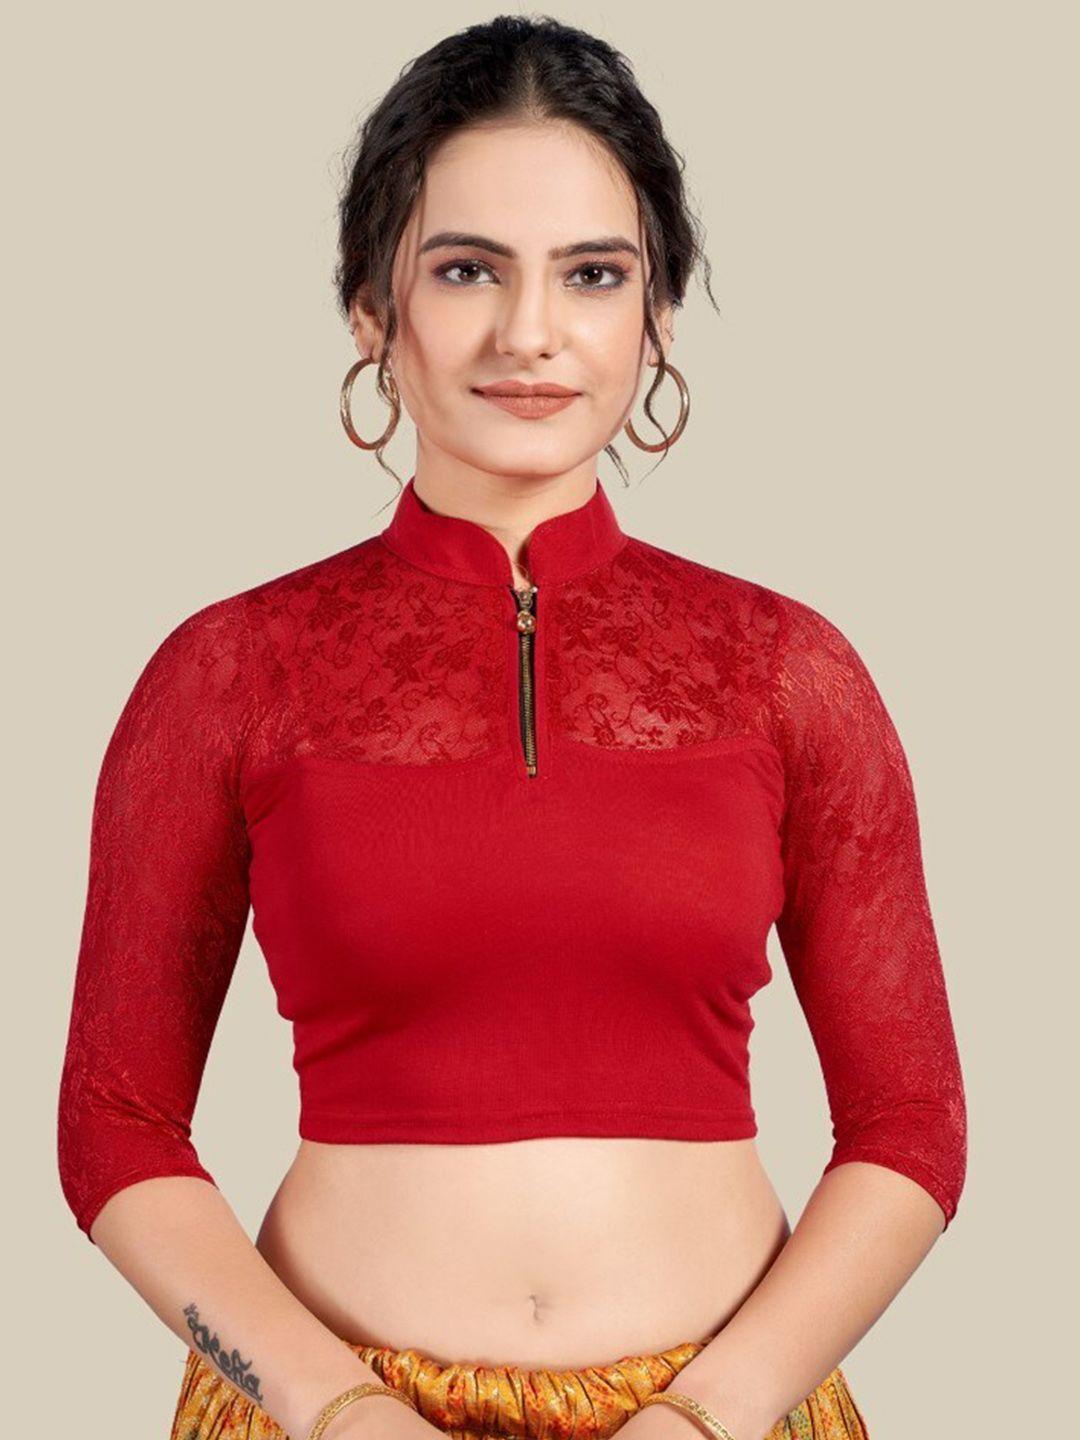 himrise mandarin collar ready to wear saree blouse